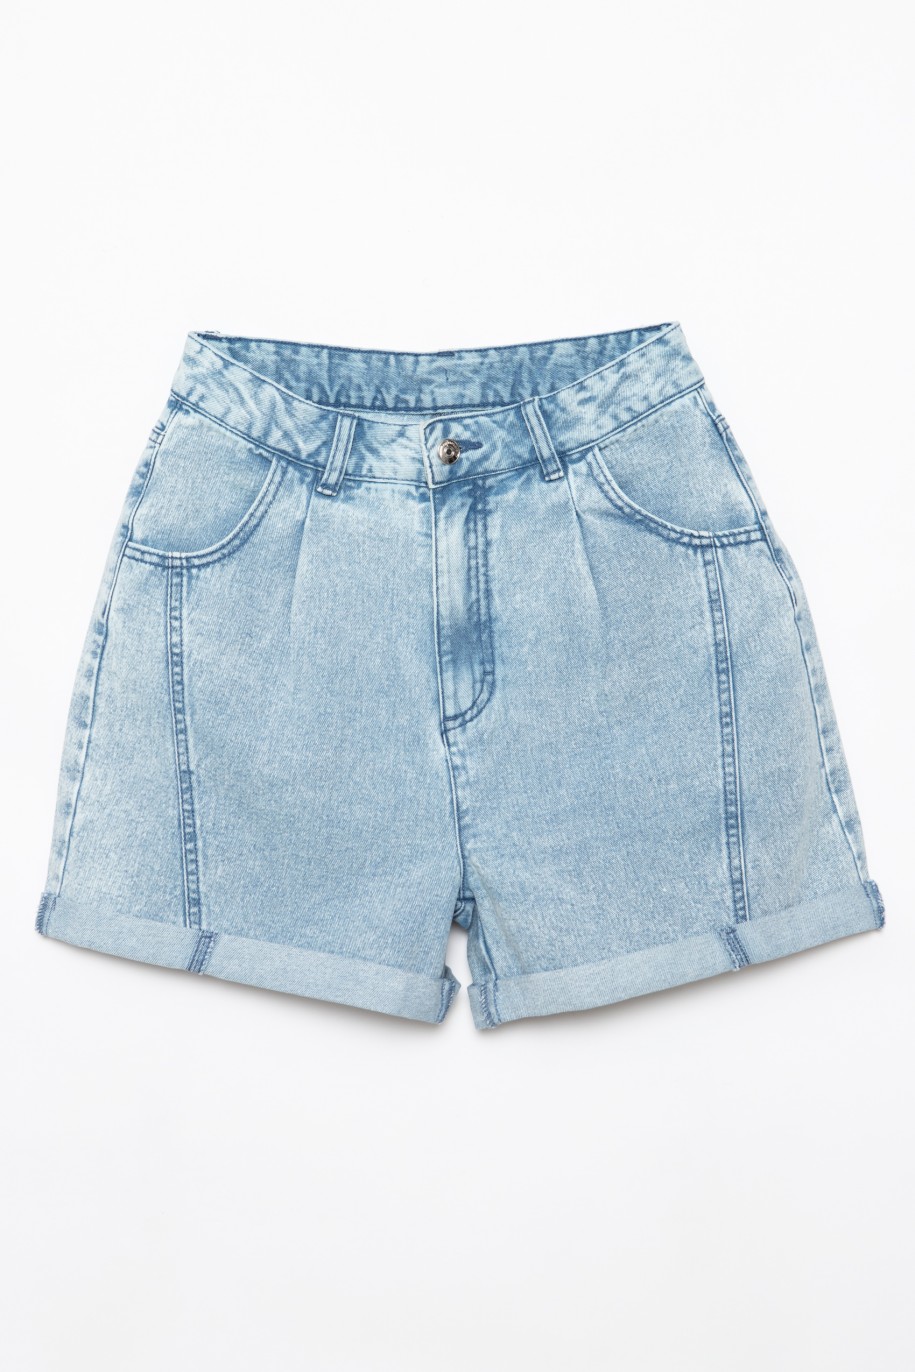 Jeansowe szorty dla dziewczyny z ozdobnymi przeszyciami - 28271